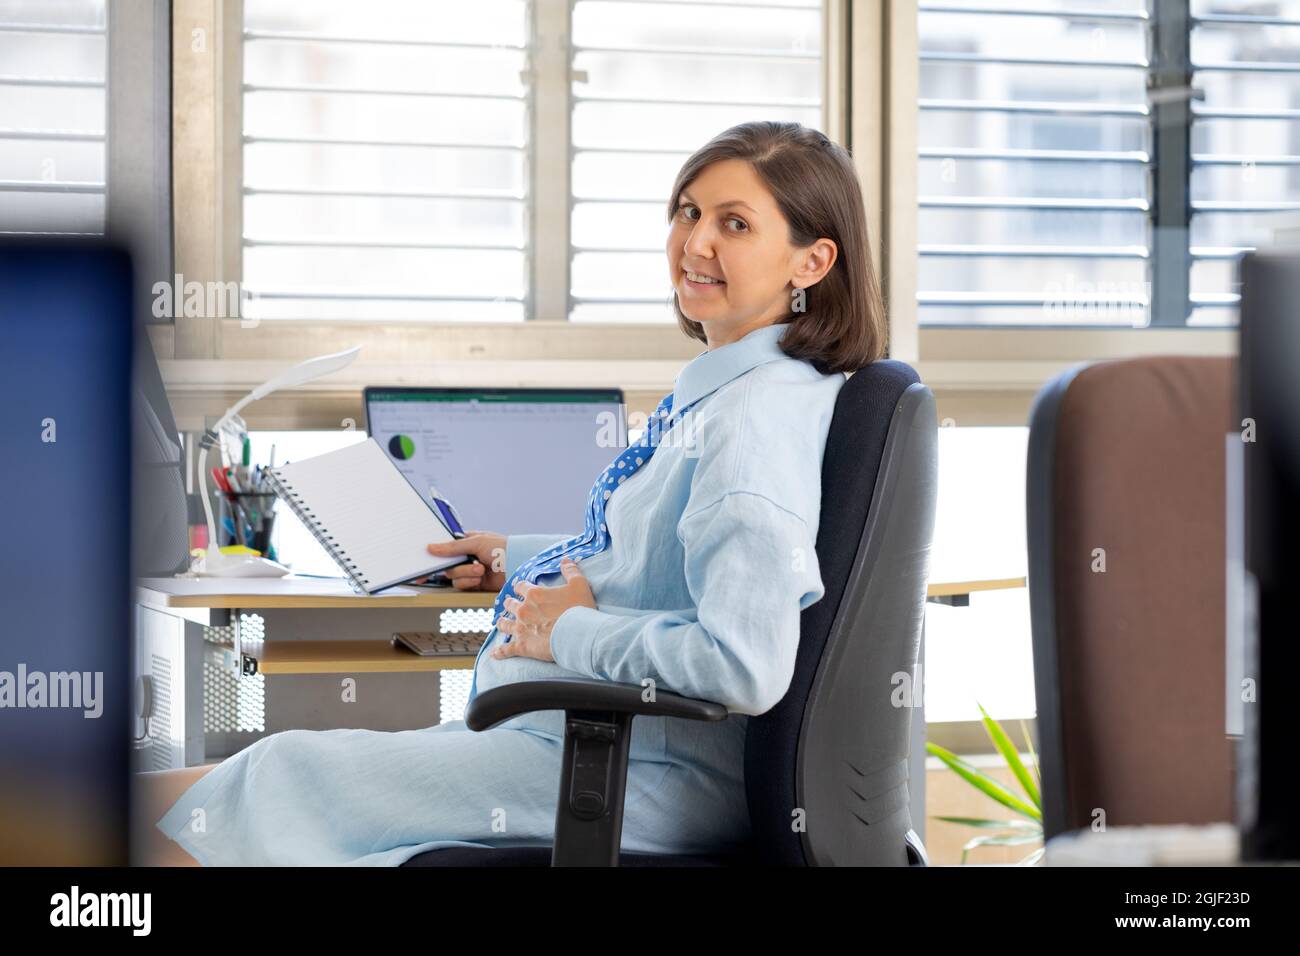 Eine Schwangerin arbeitet im Büro am Computer. Der Mitarbeiter sitzt auf einem Stuhl gegenüber dem Fenster und dreht sich um. Stockfoto